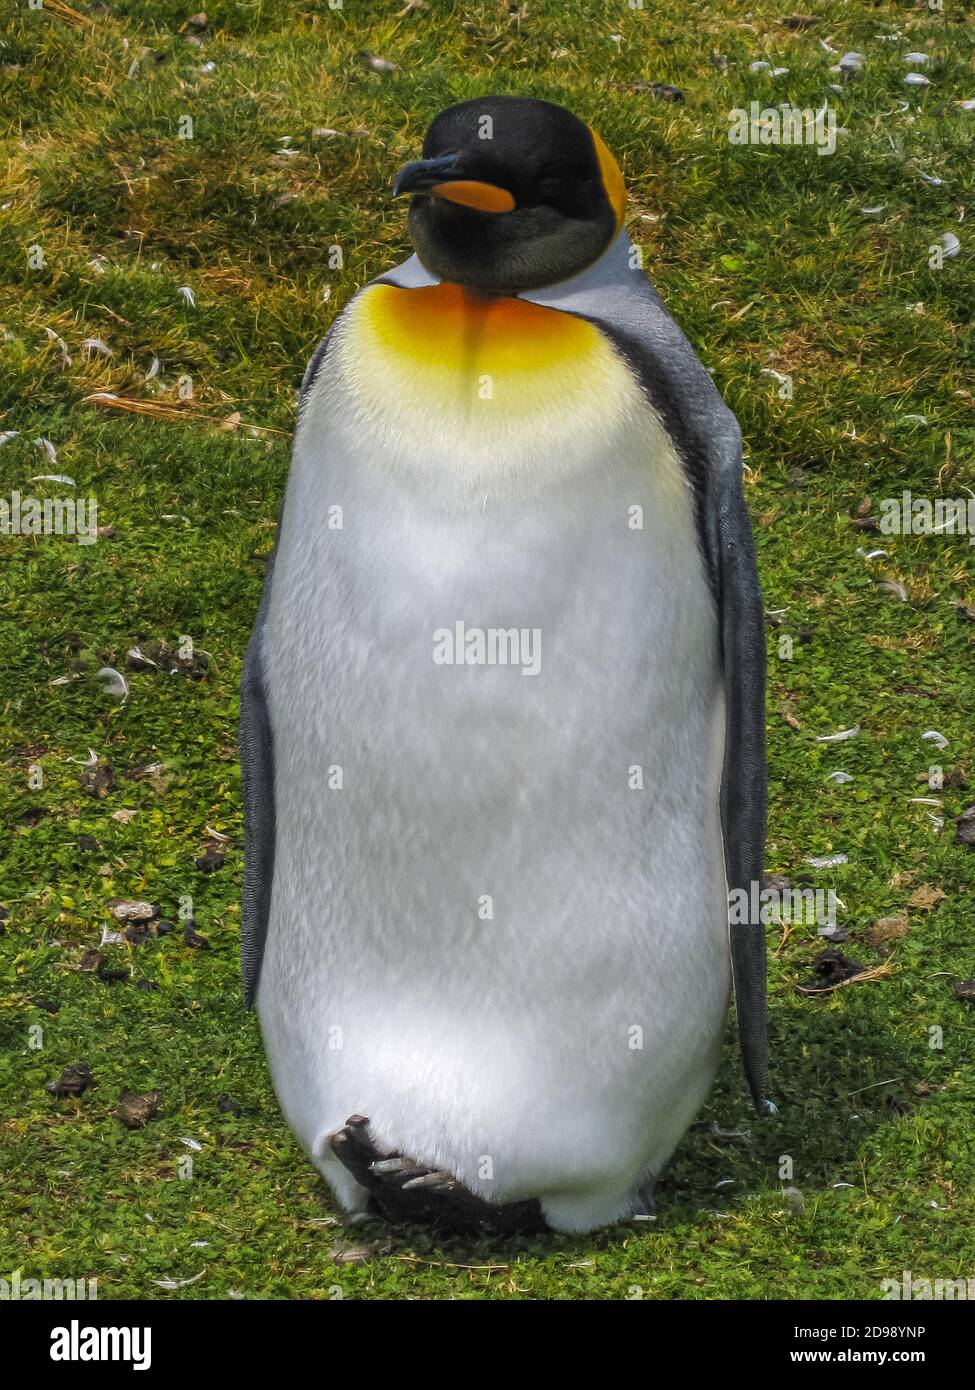 Volunteer Beach, Falkland Islands, Royaume-Uni - 15 décembre 2008 : portrait frontal plein format de King Penguin à la colonie tout en restant debout sur le groun vert Banque D'Images